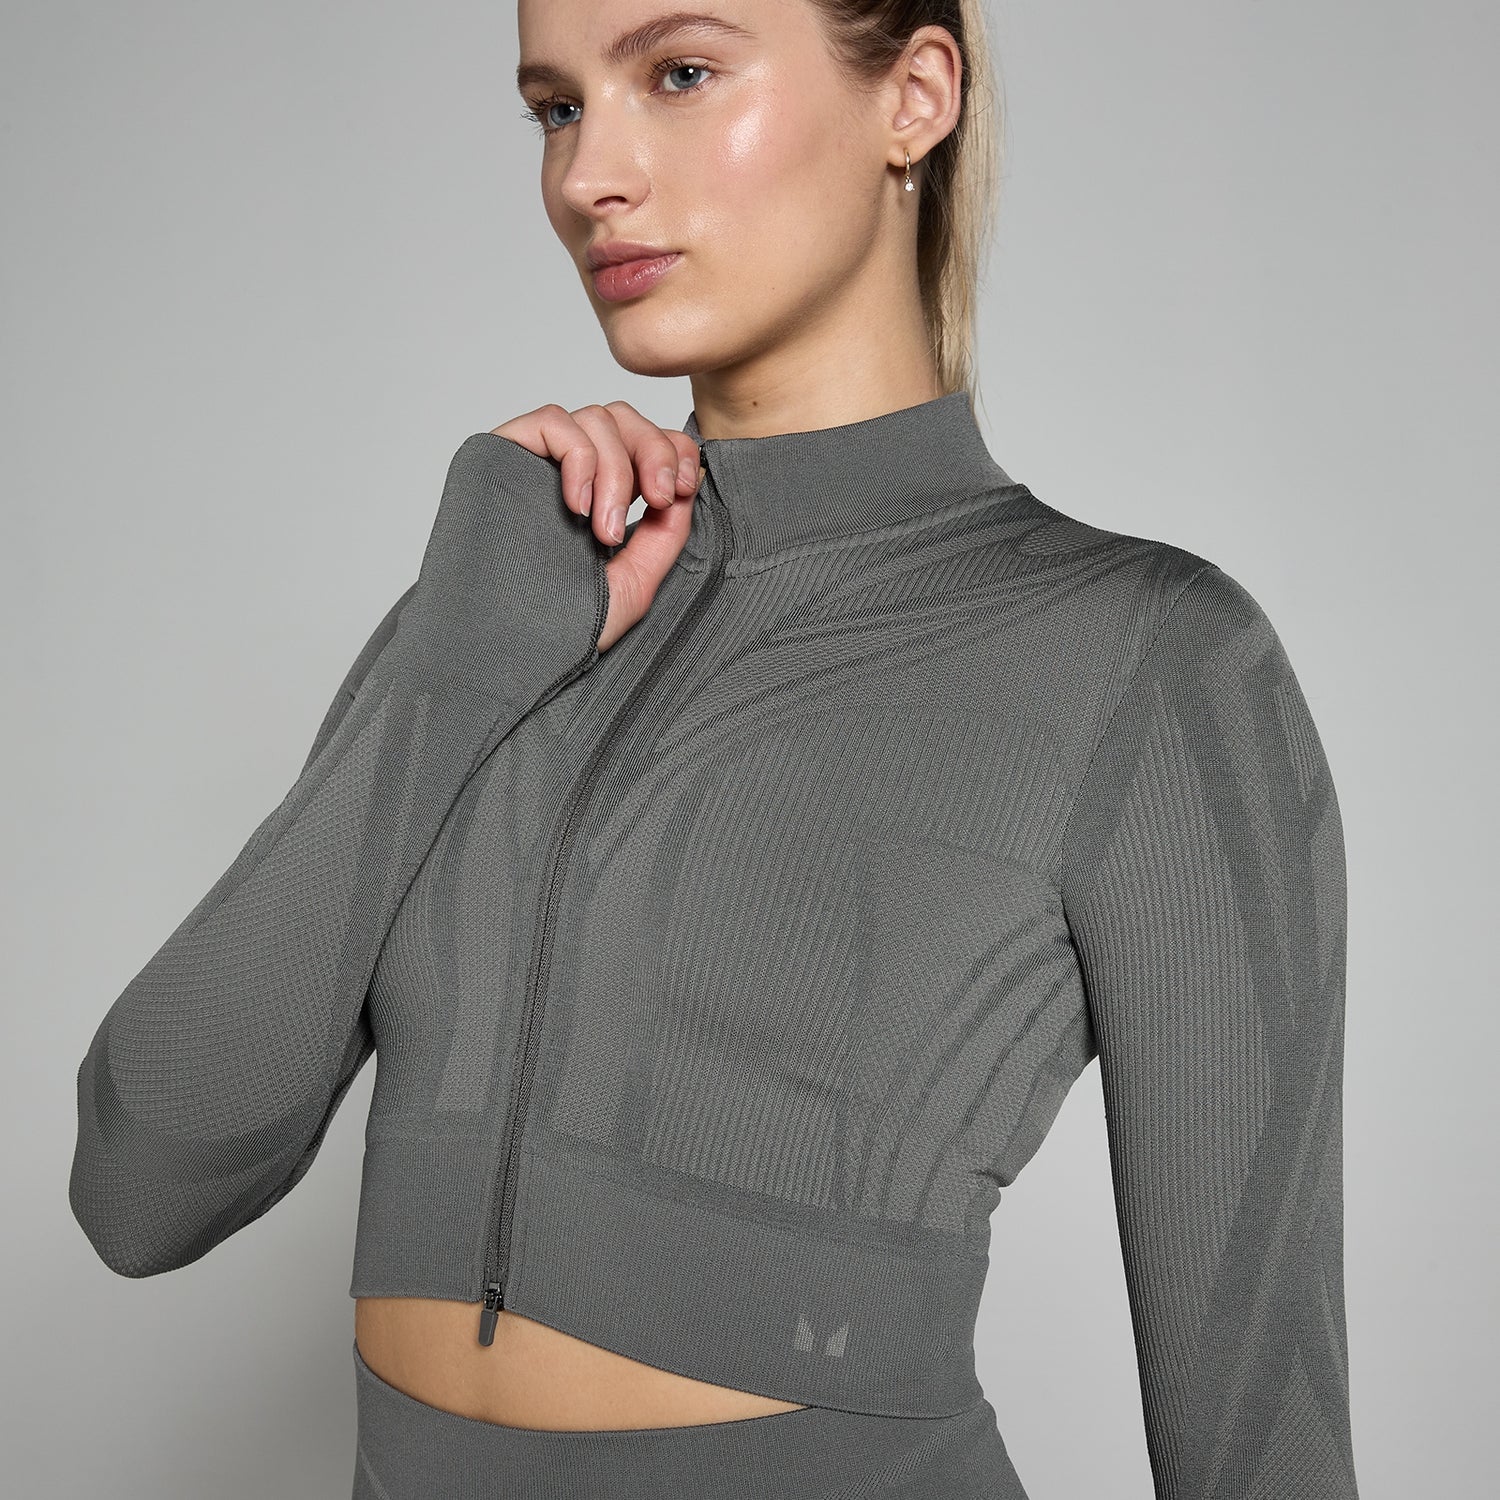 Женская укороченная бесшовная куртка MP Tempo Ultra Geometric — графитовый цвет - XS